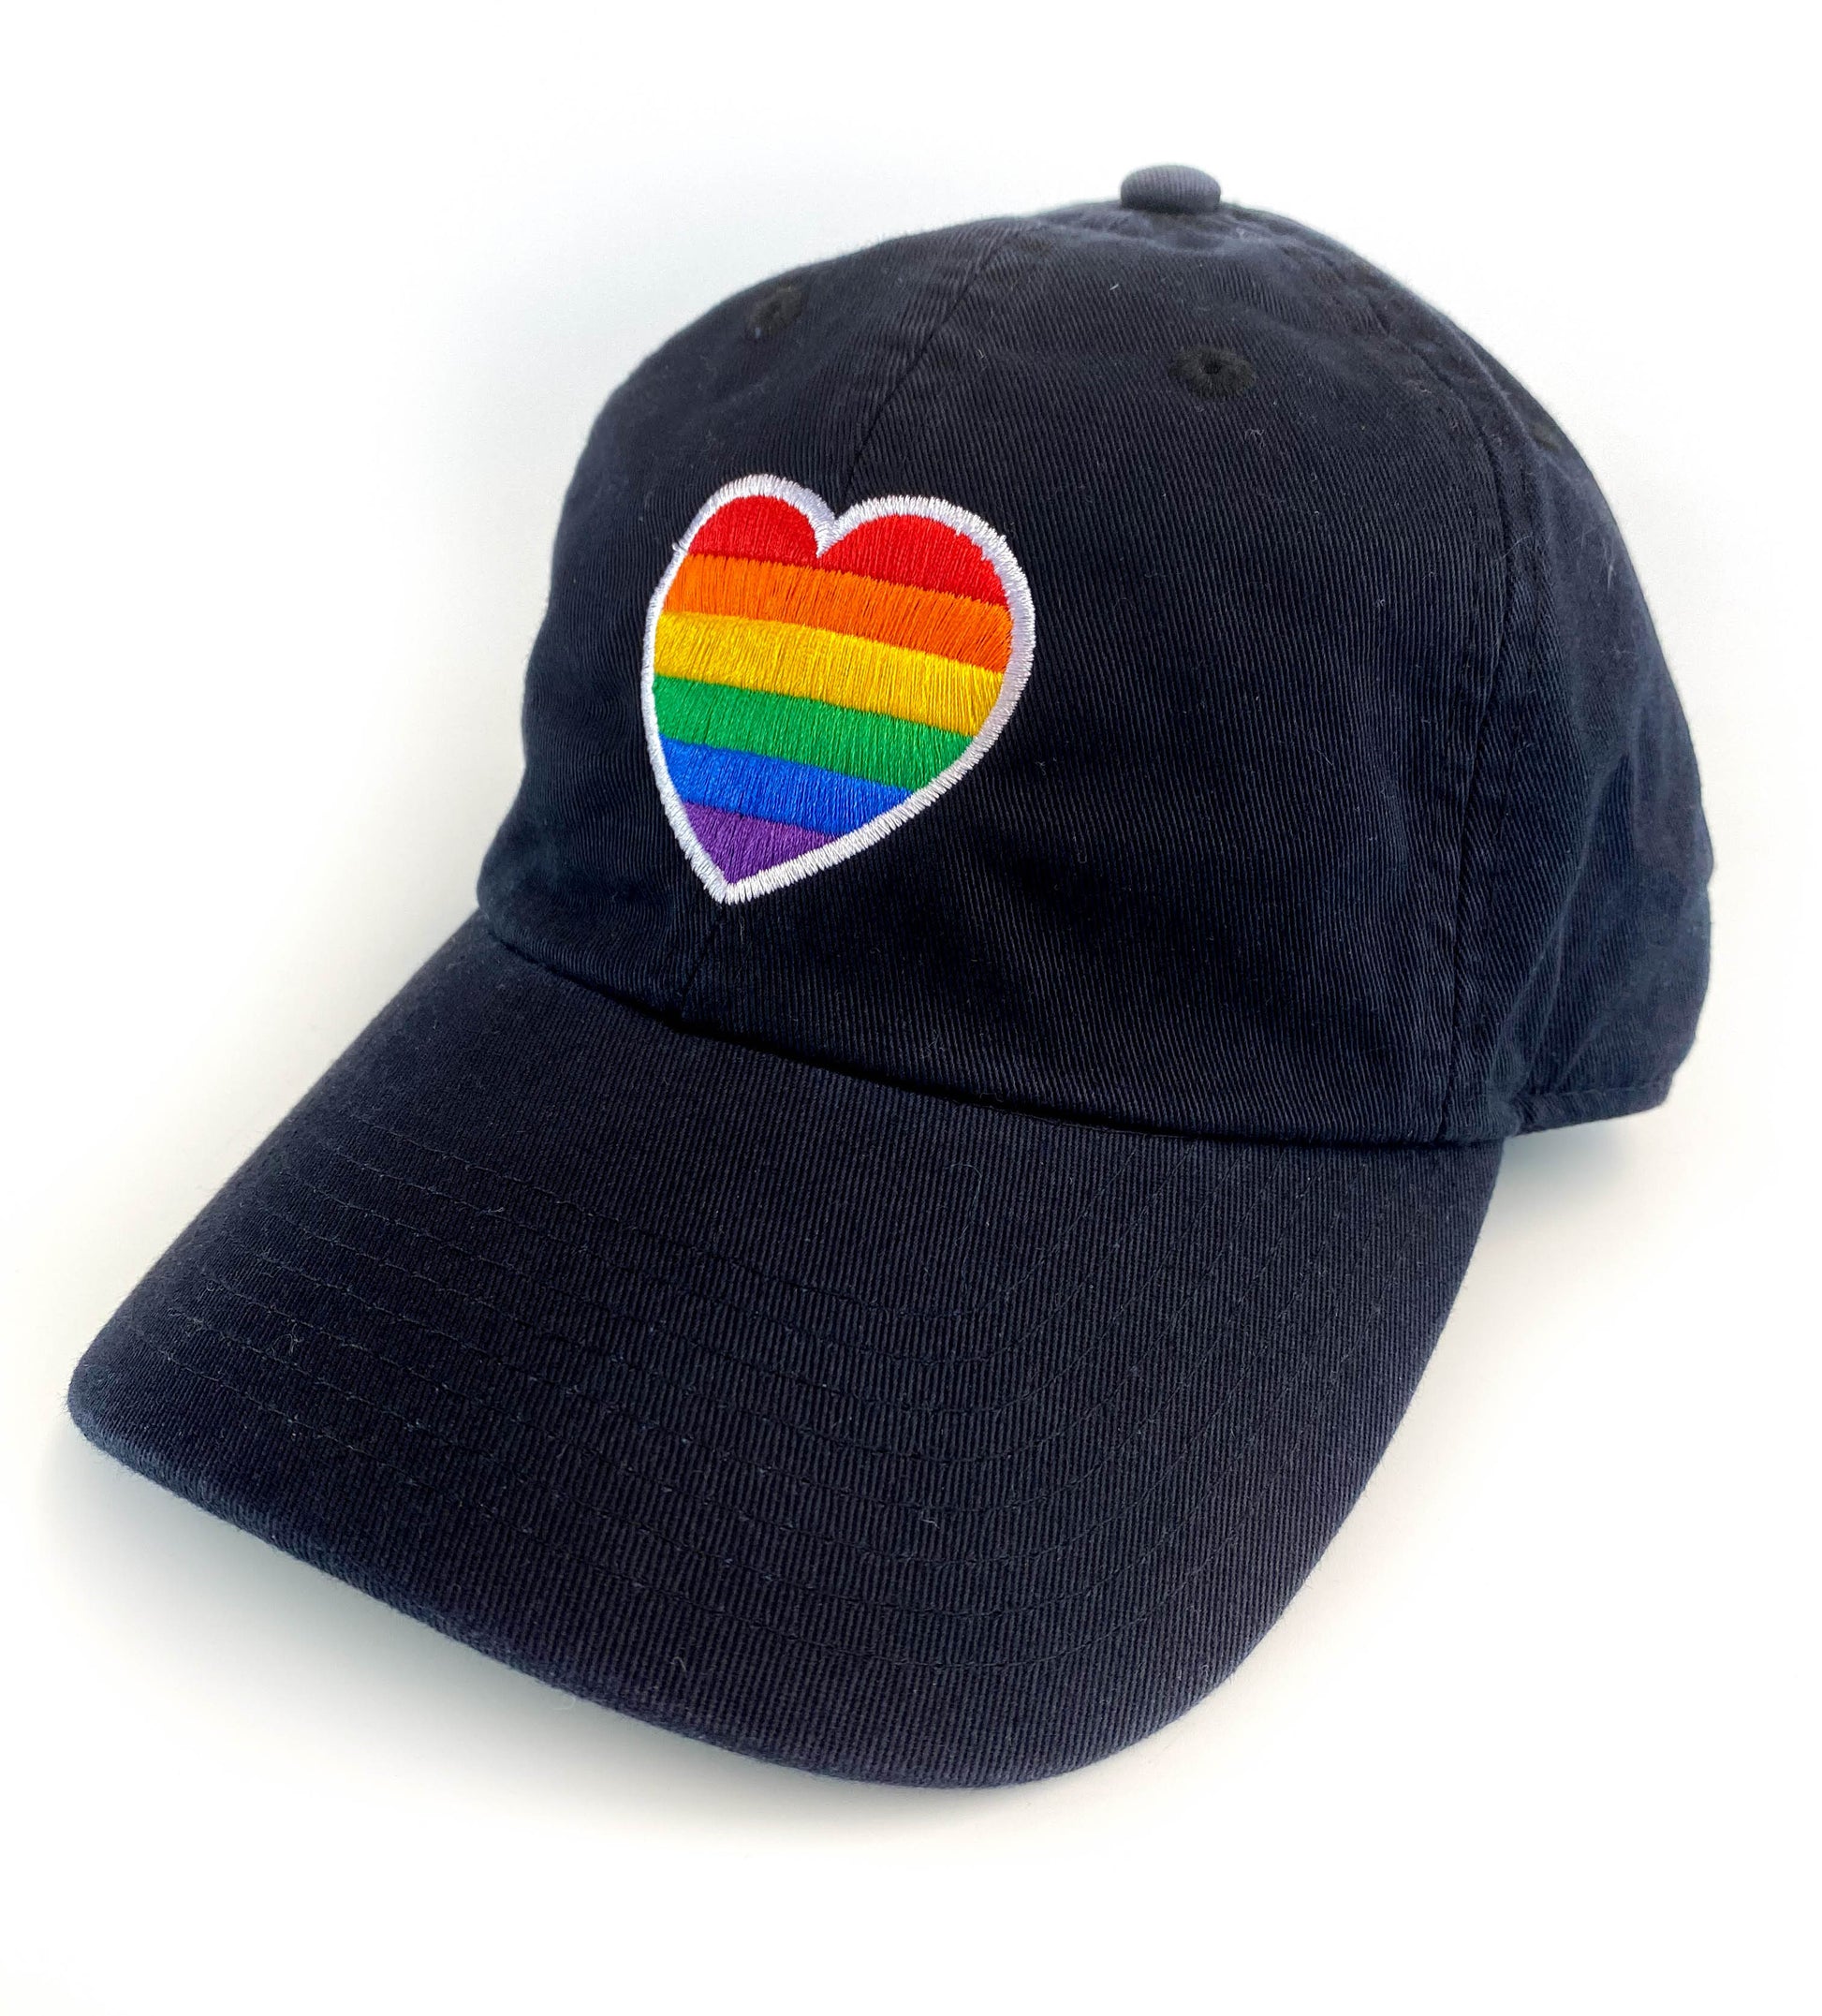 Buy Pride Sweatshirt - Rainbow Heart at 5% OFF 🤑 – The Banyan Tee